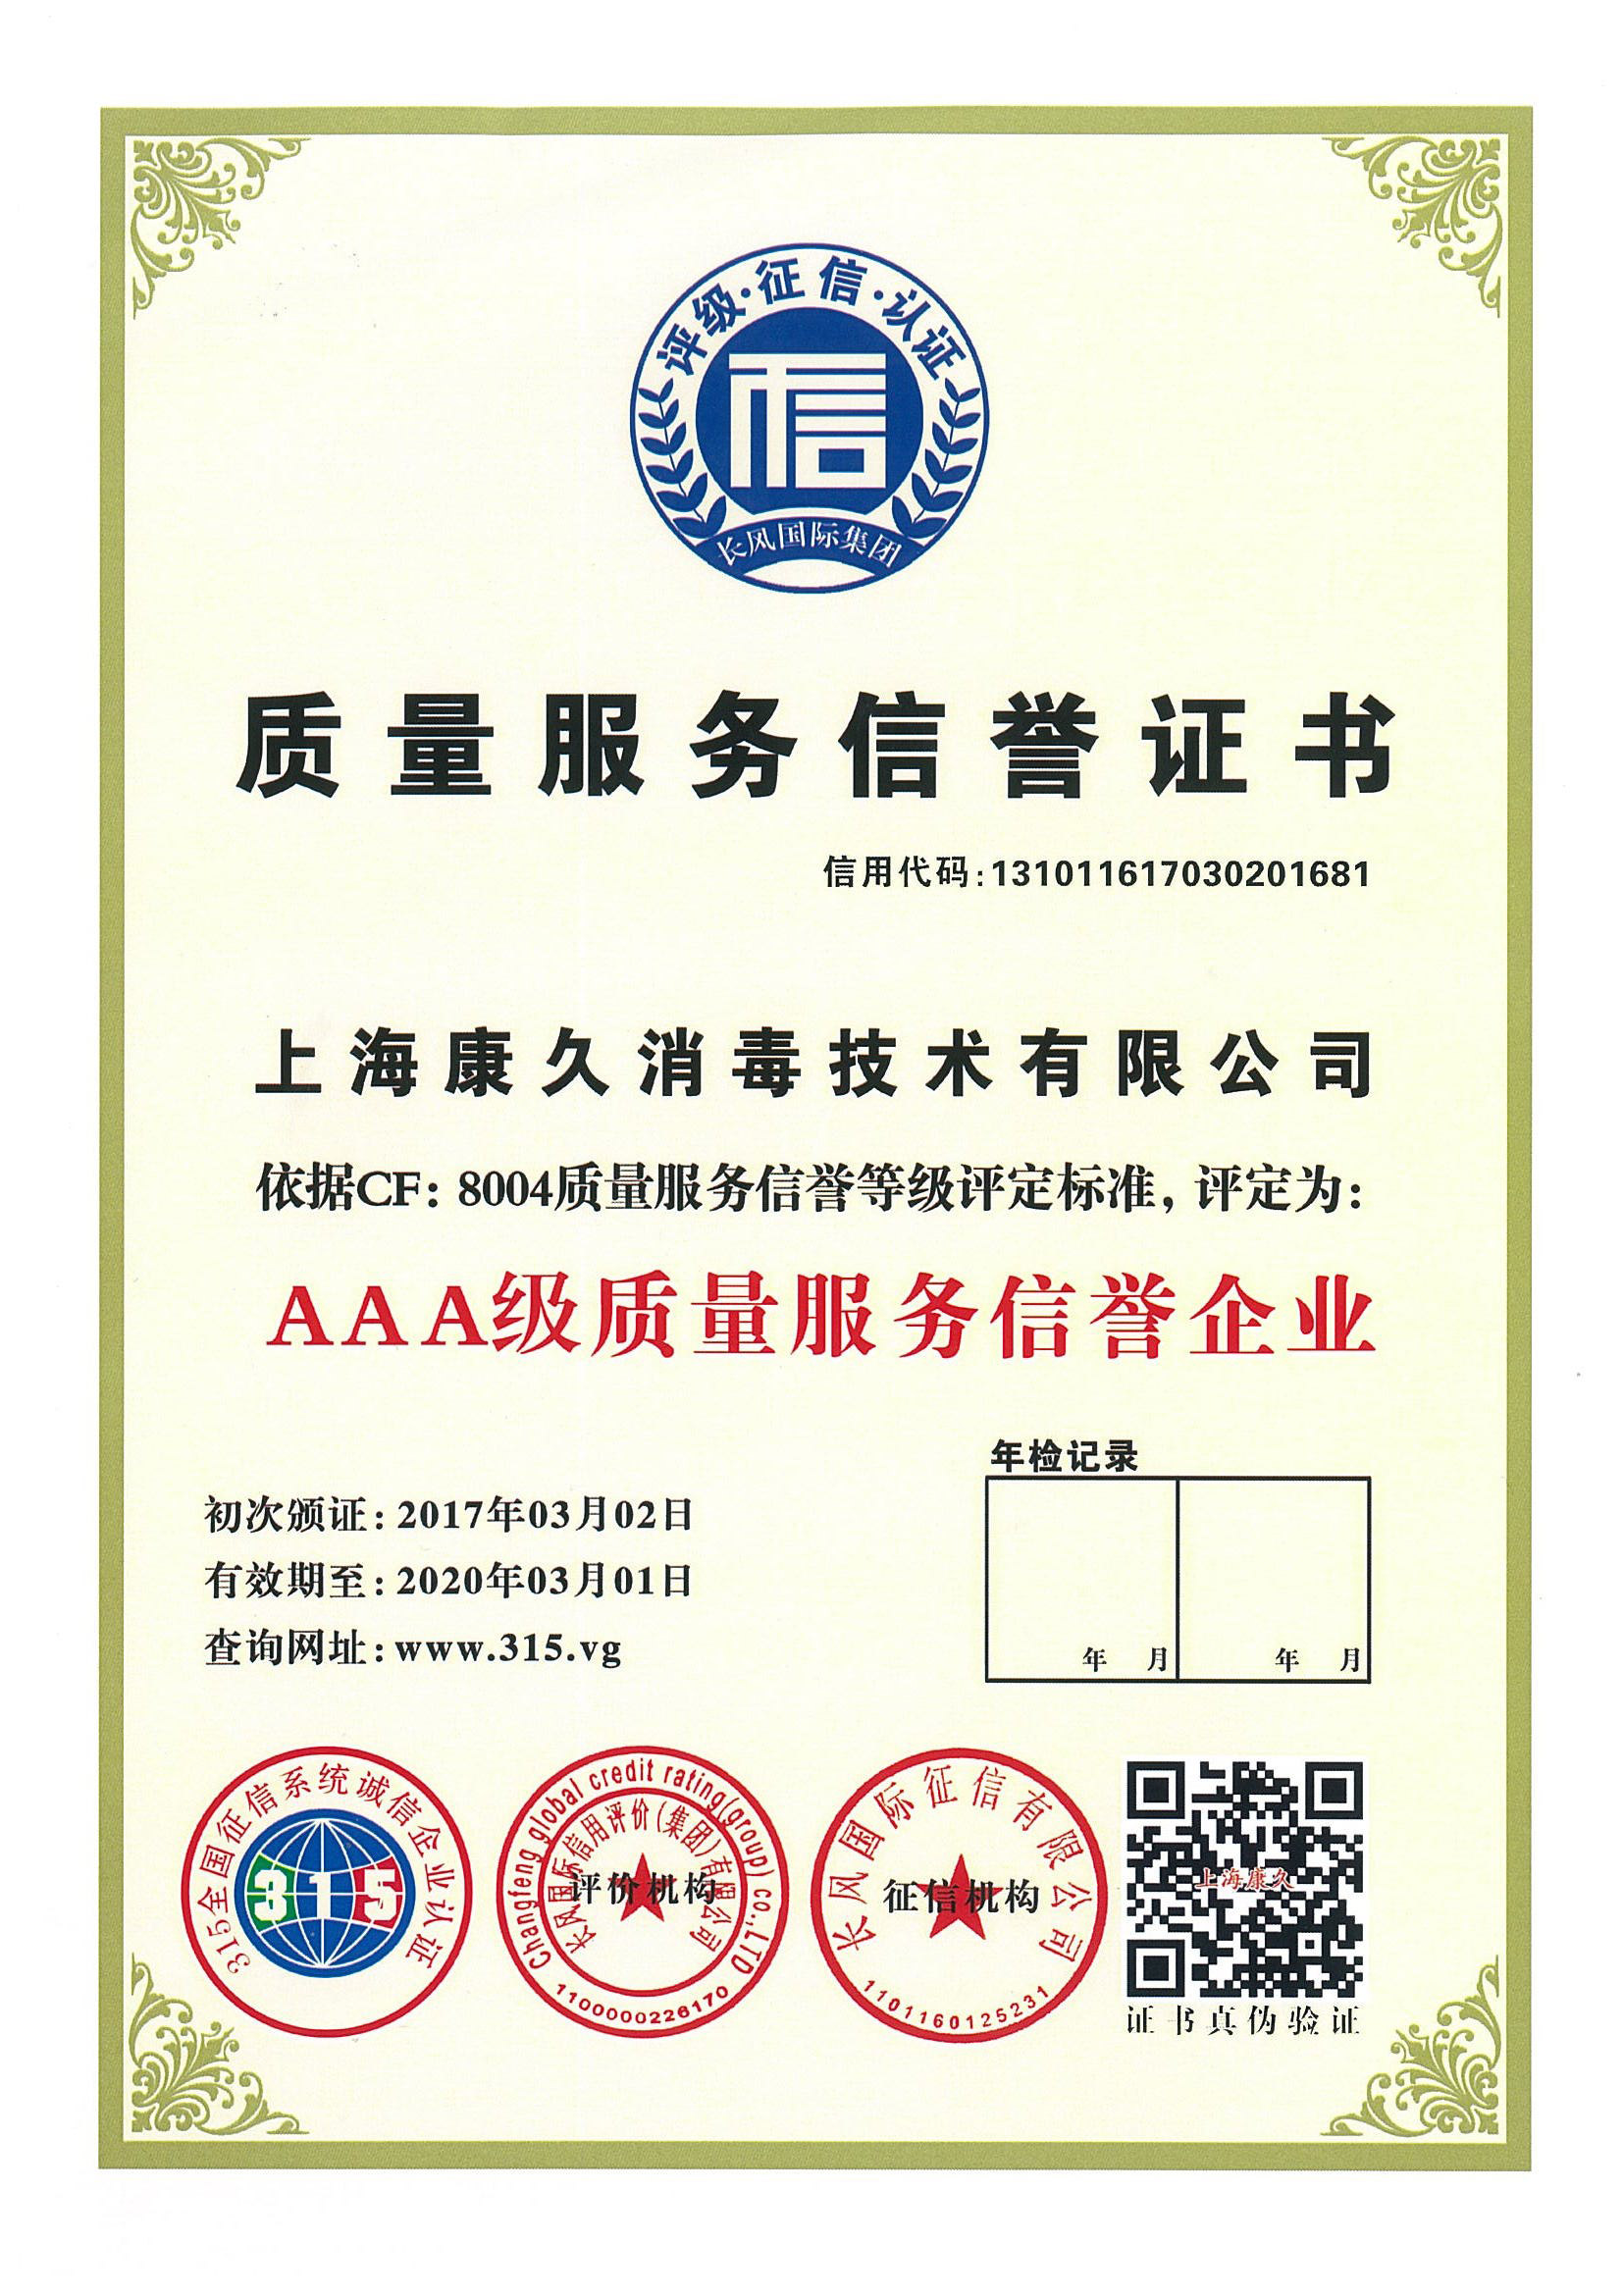 “亳州质量服务信誉证书